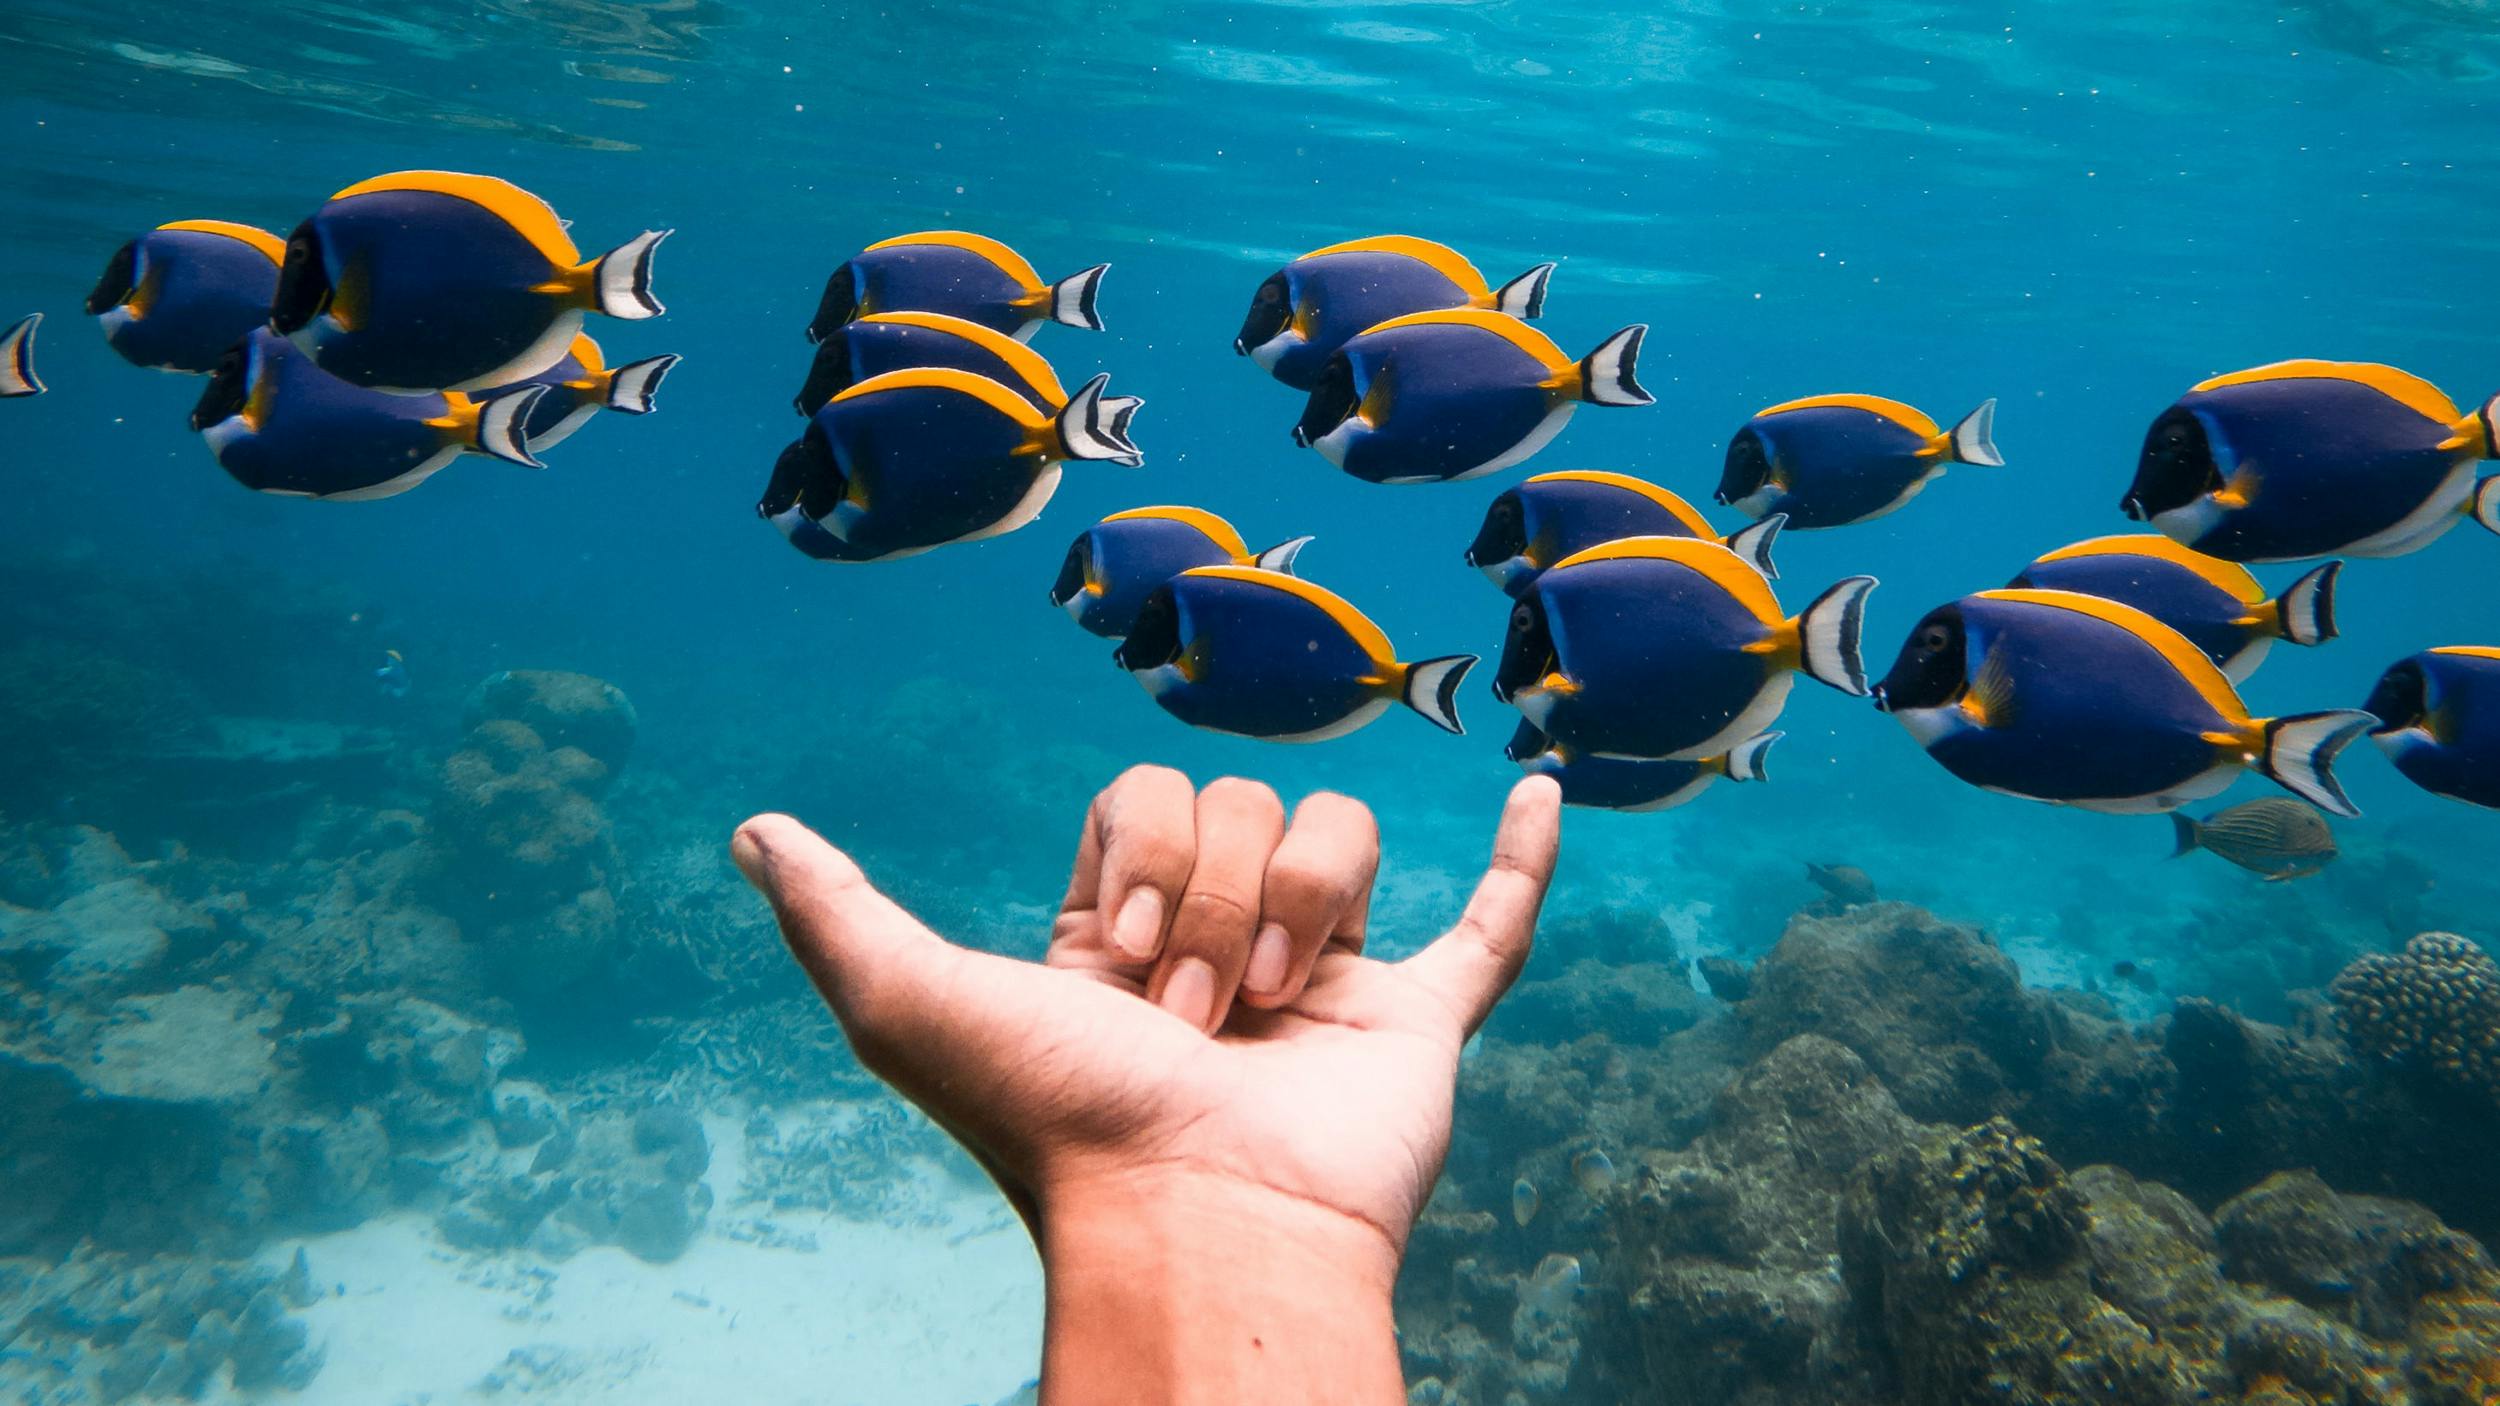 Unterwasser-Bild: Eine Hand macht den Surfer-Gruß, dahinter schwimmt ein Schwarm Fische. Auf dem Boden sind Korallen zu sehen.